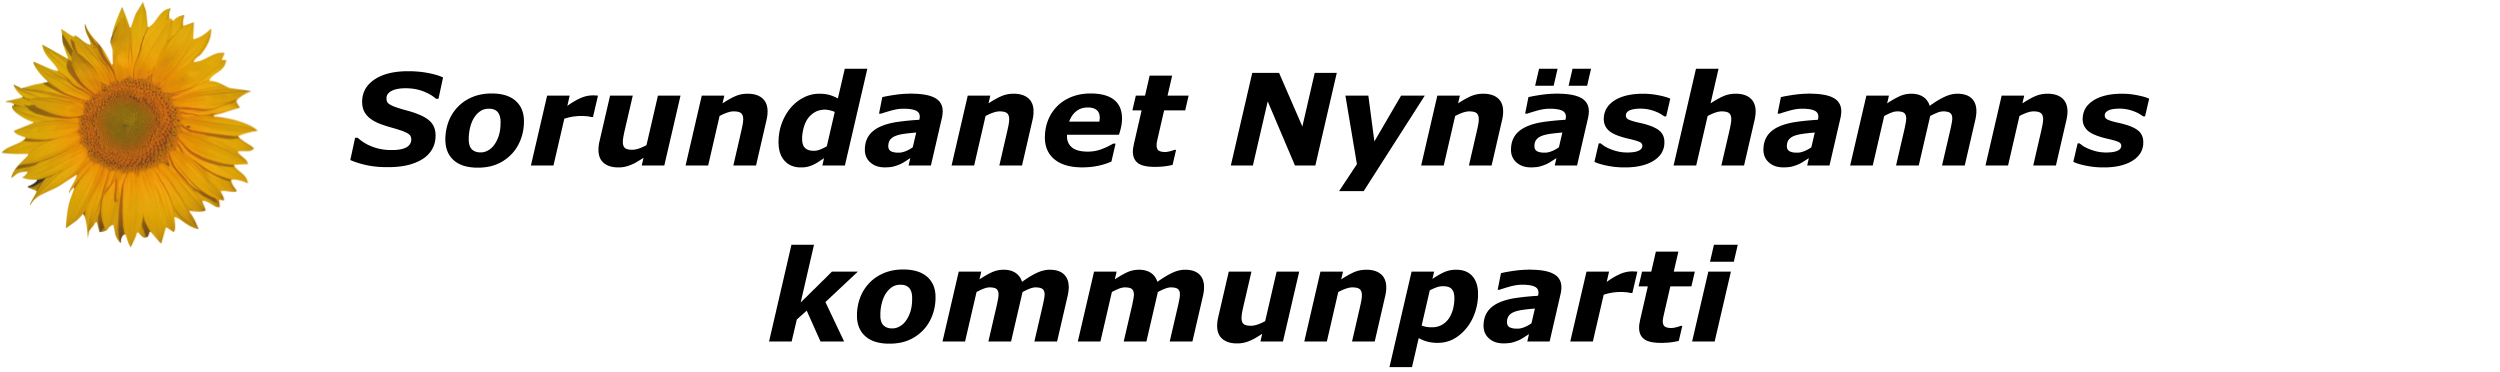 Sorundanet symbol logotyp till valsedel 2018